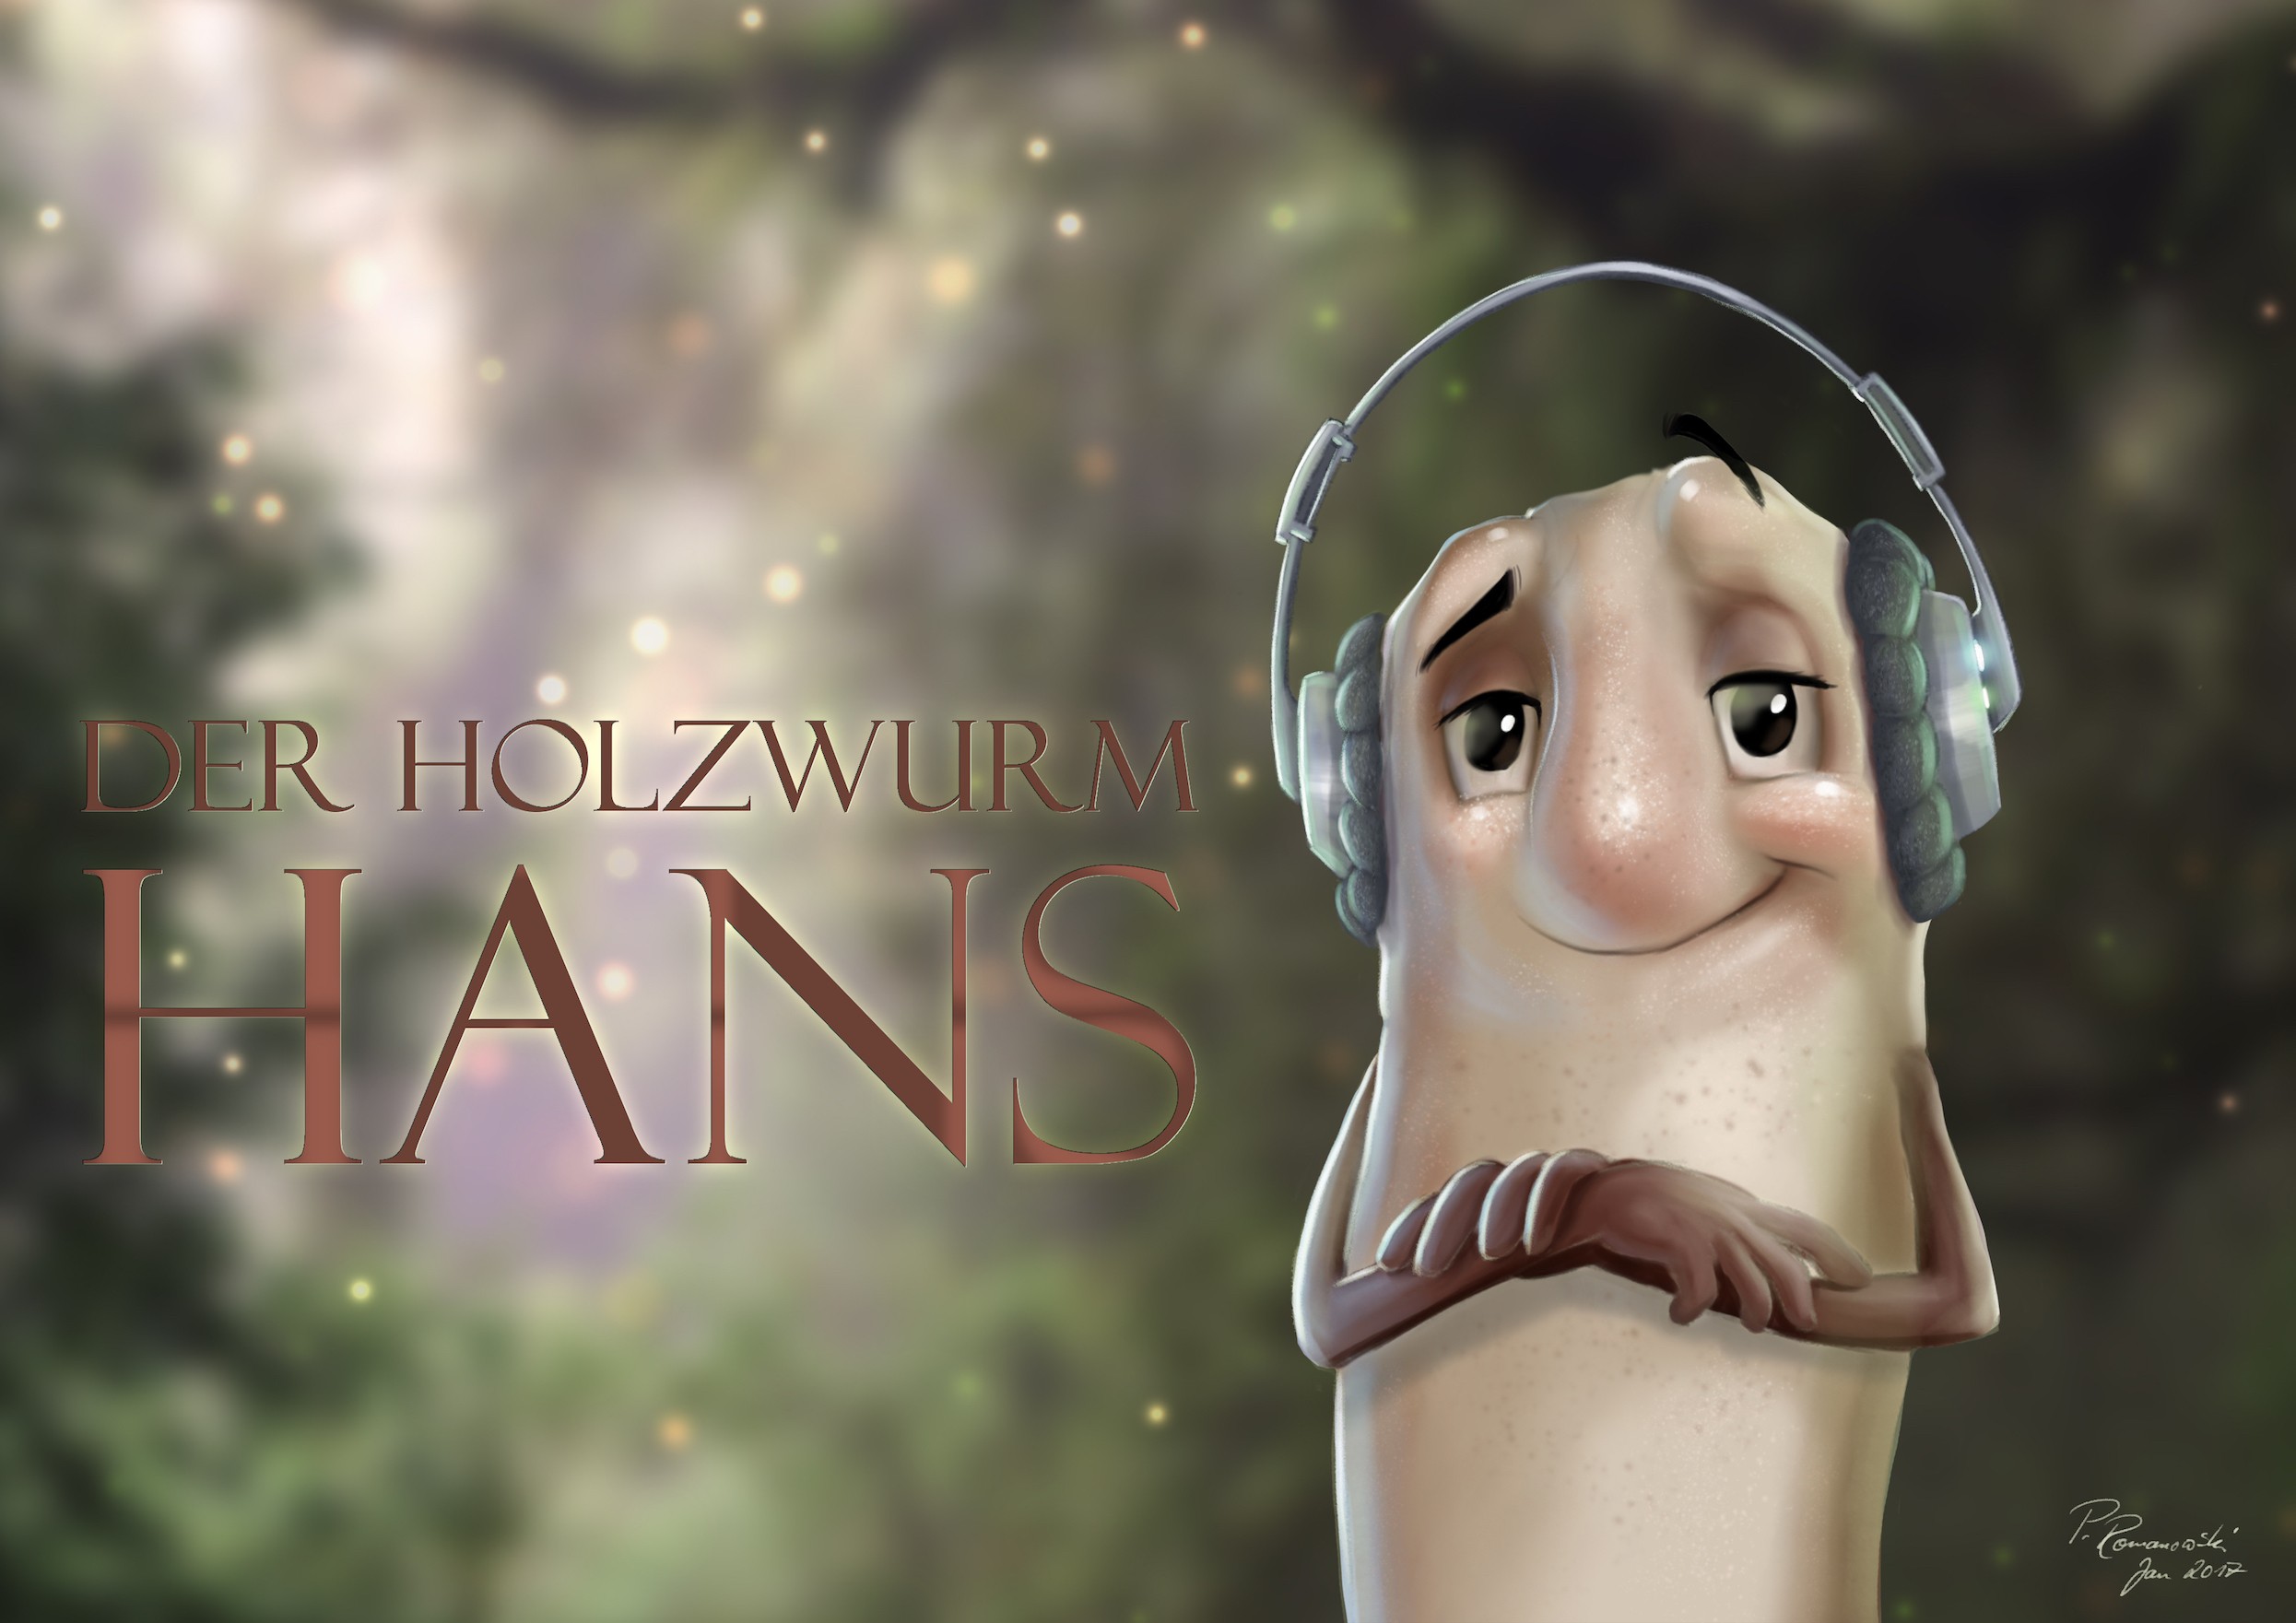 Der Holzwurm Hans